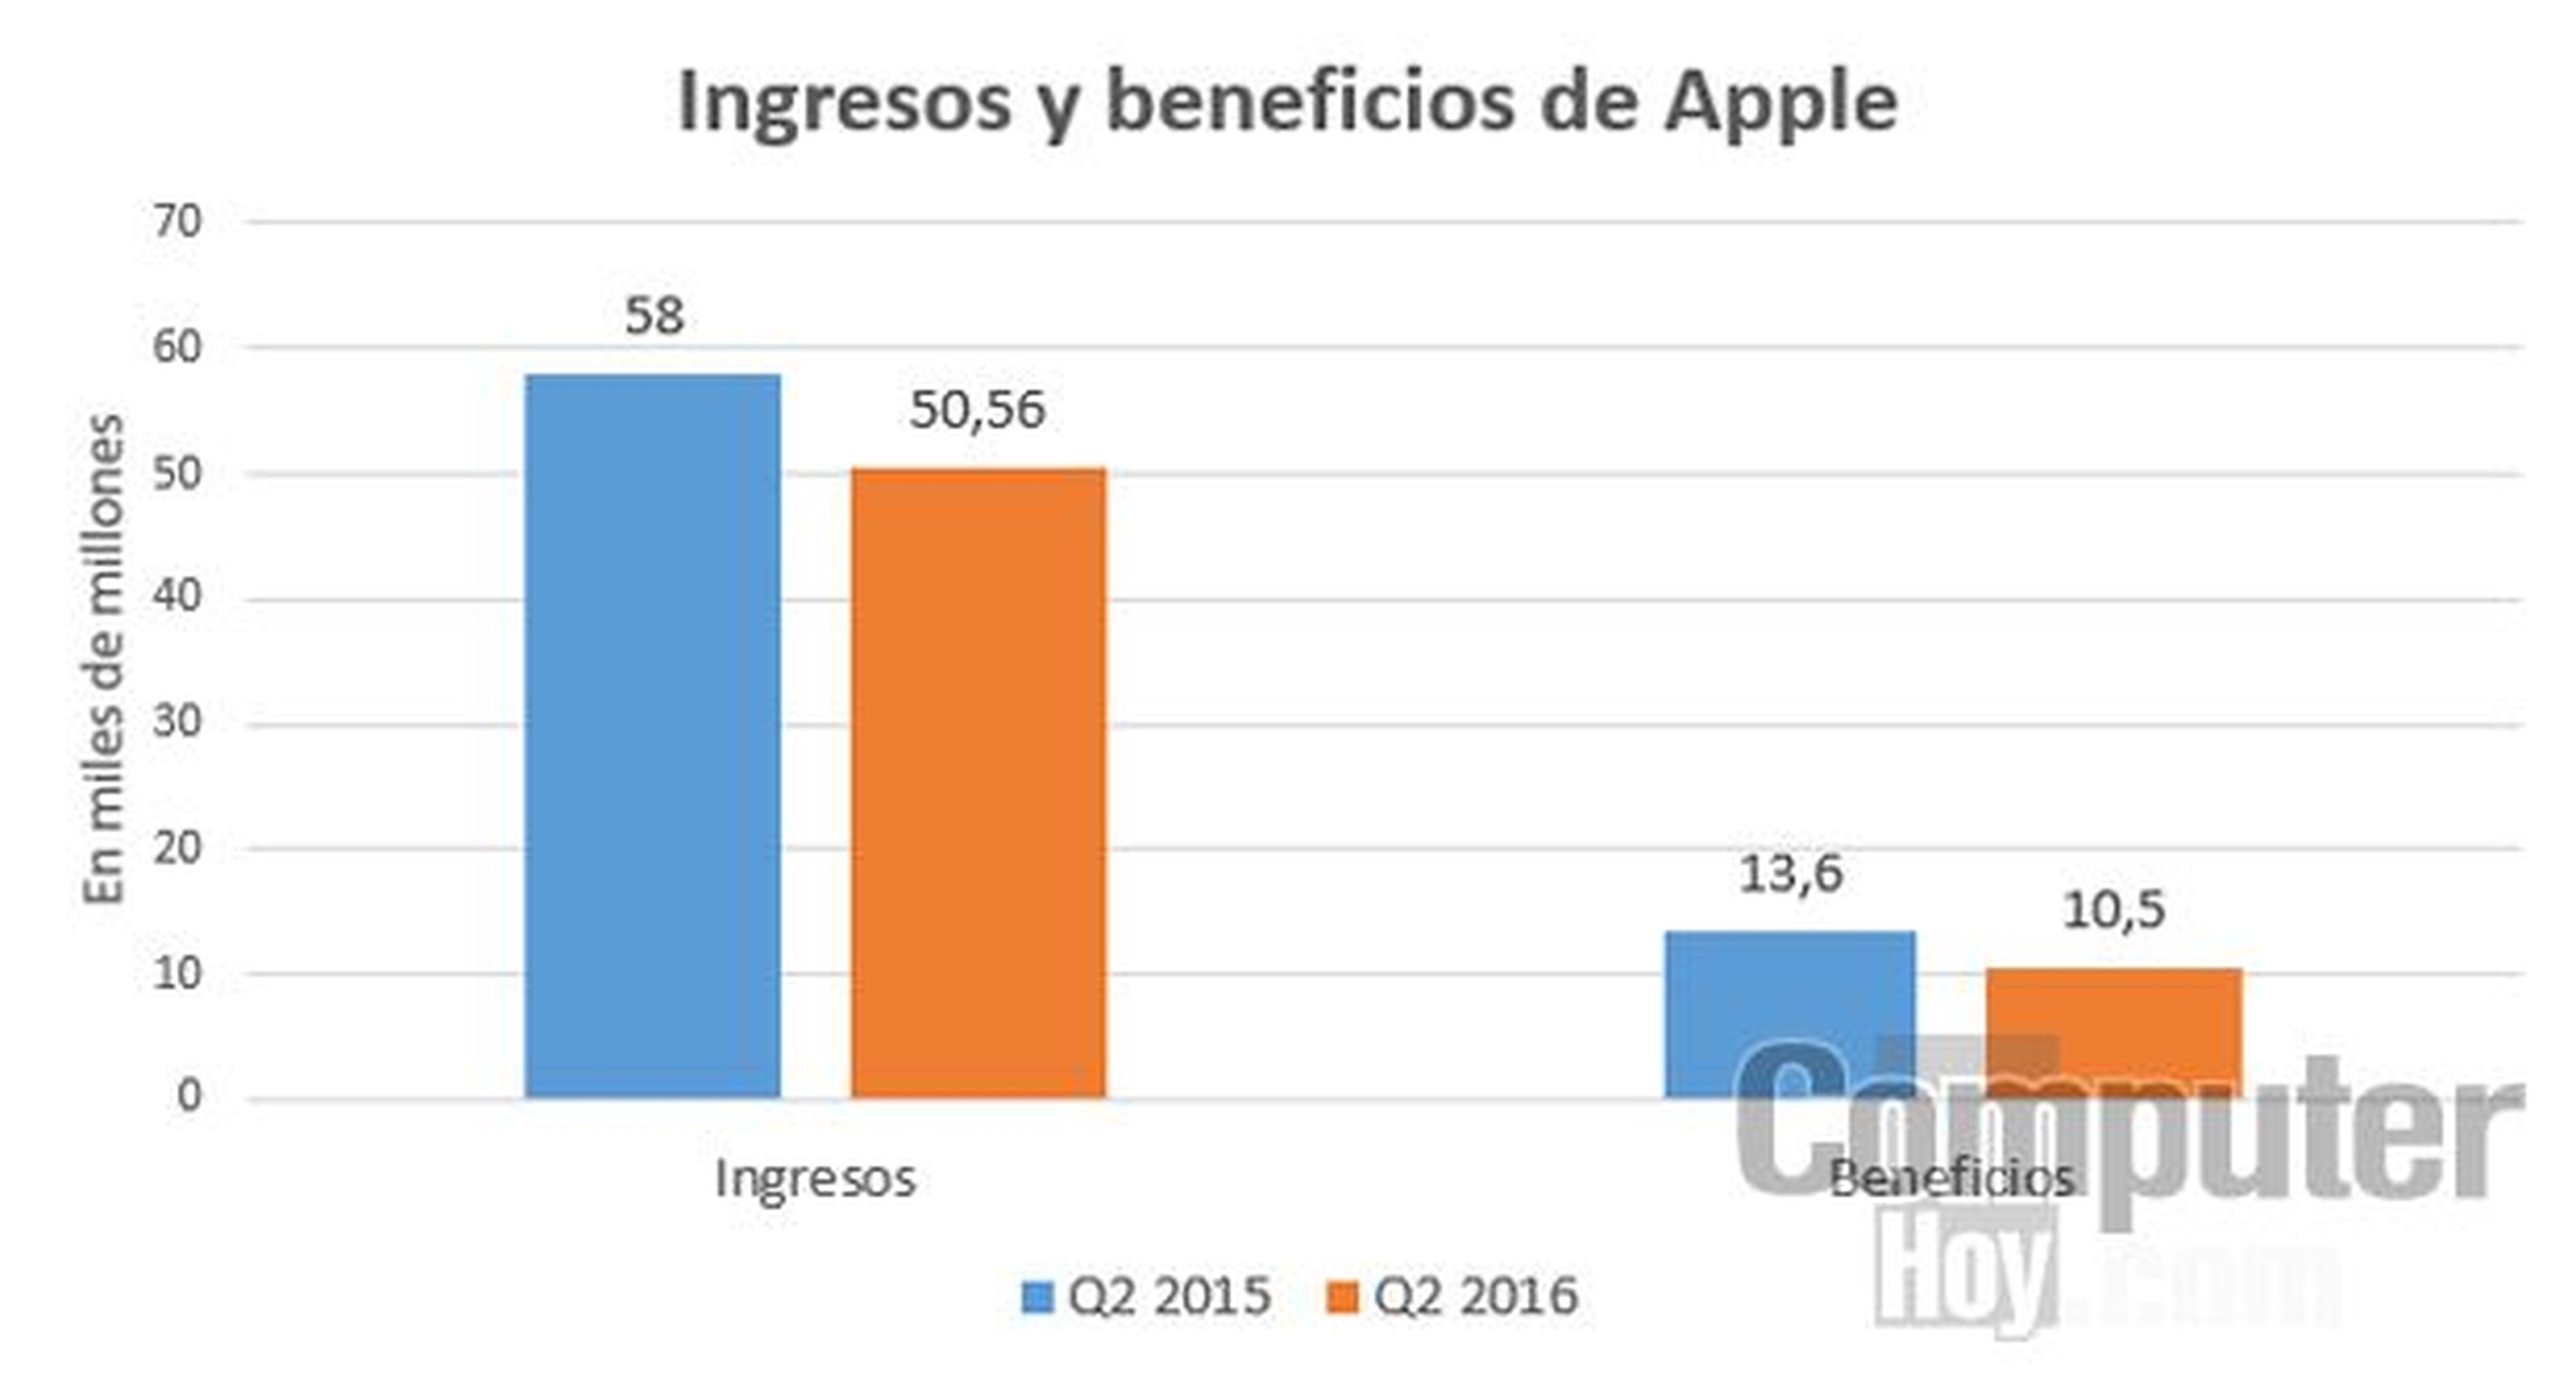 Ingresos y beneficios de Apple en el 2015 y 2016